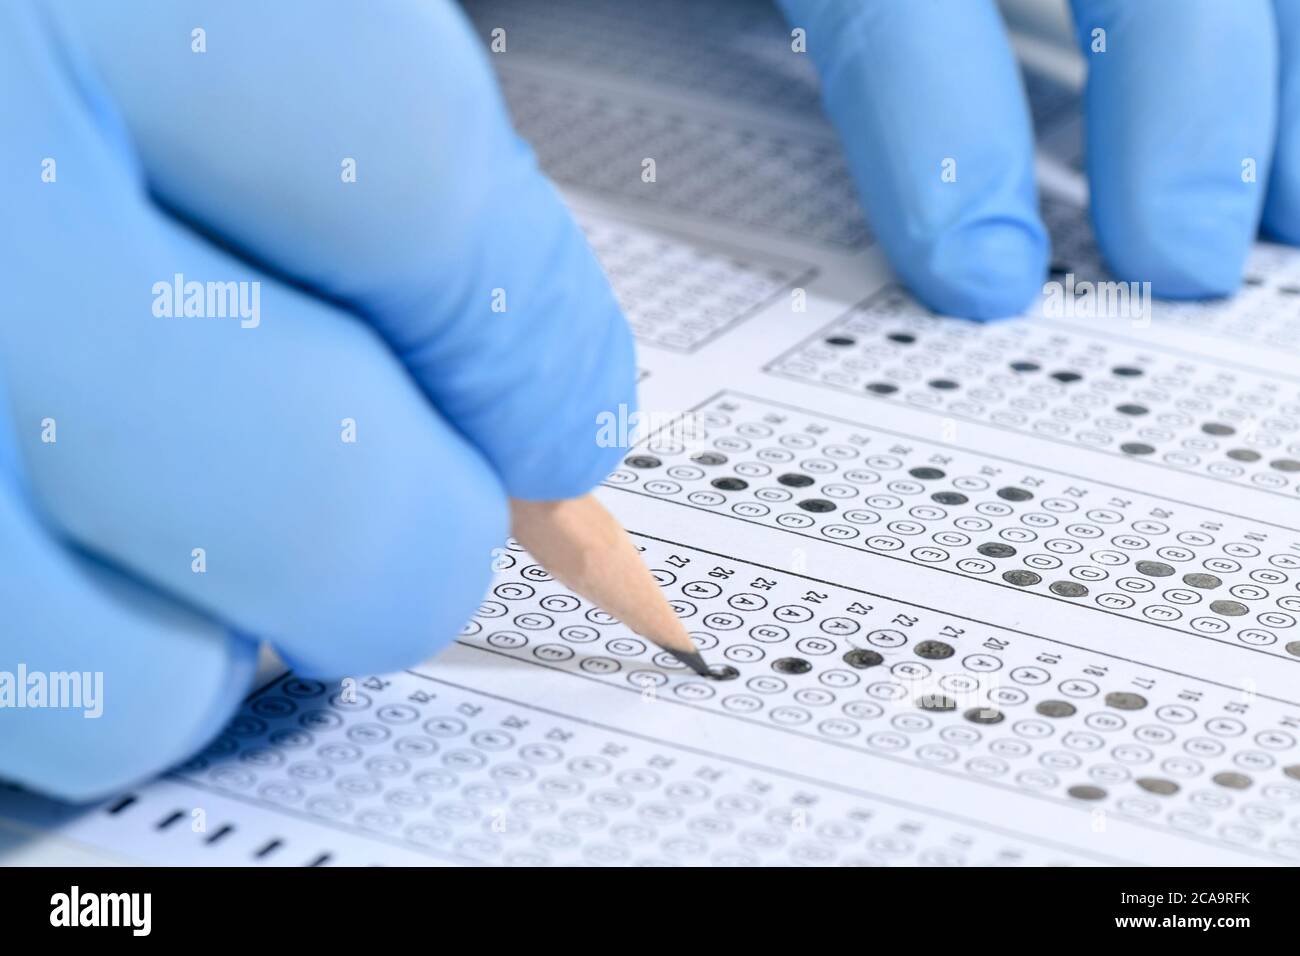 Student taking multiple choice exam during Coronavirus pandemic Stock Photo